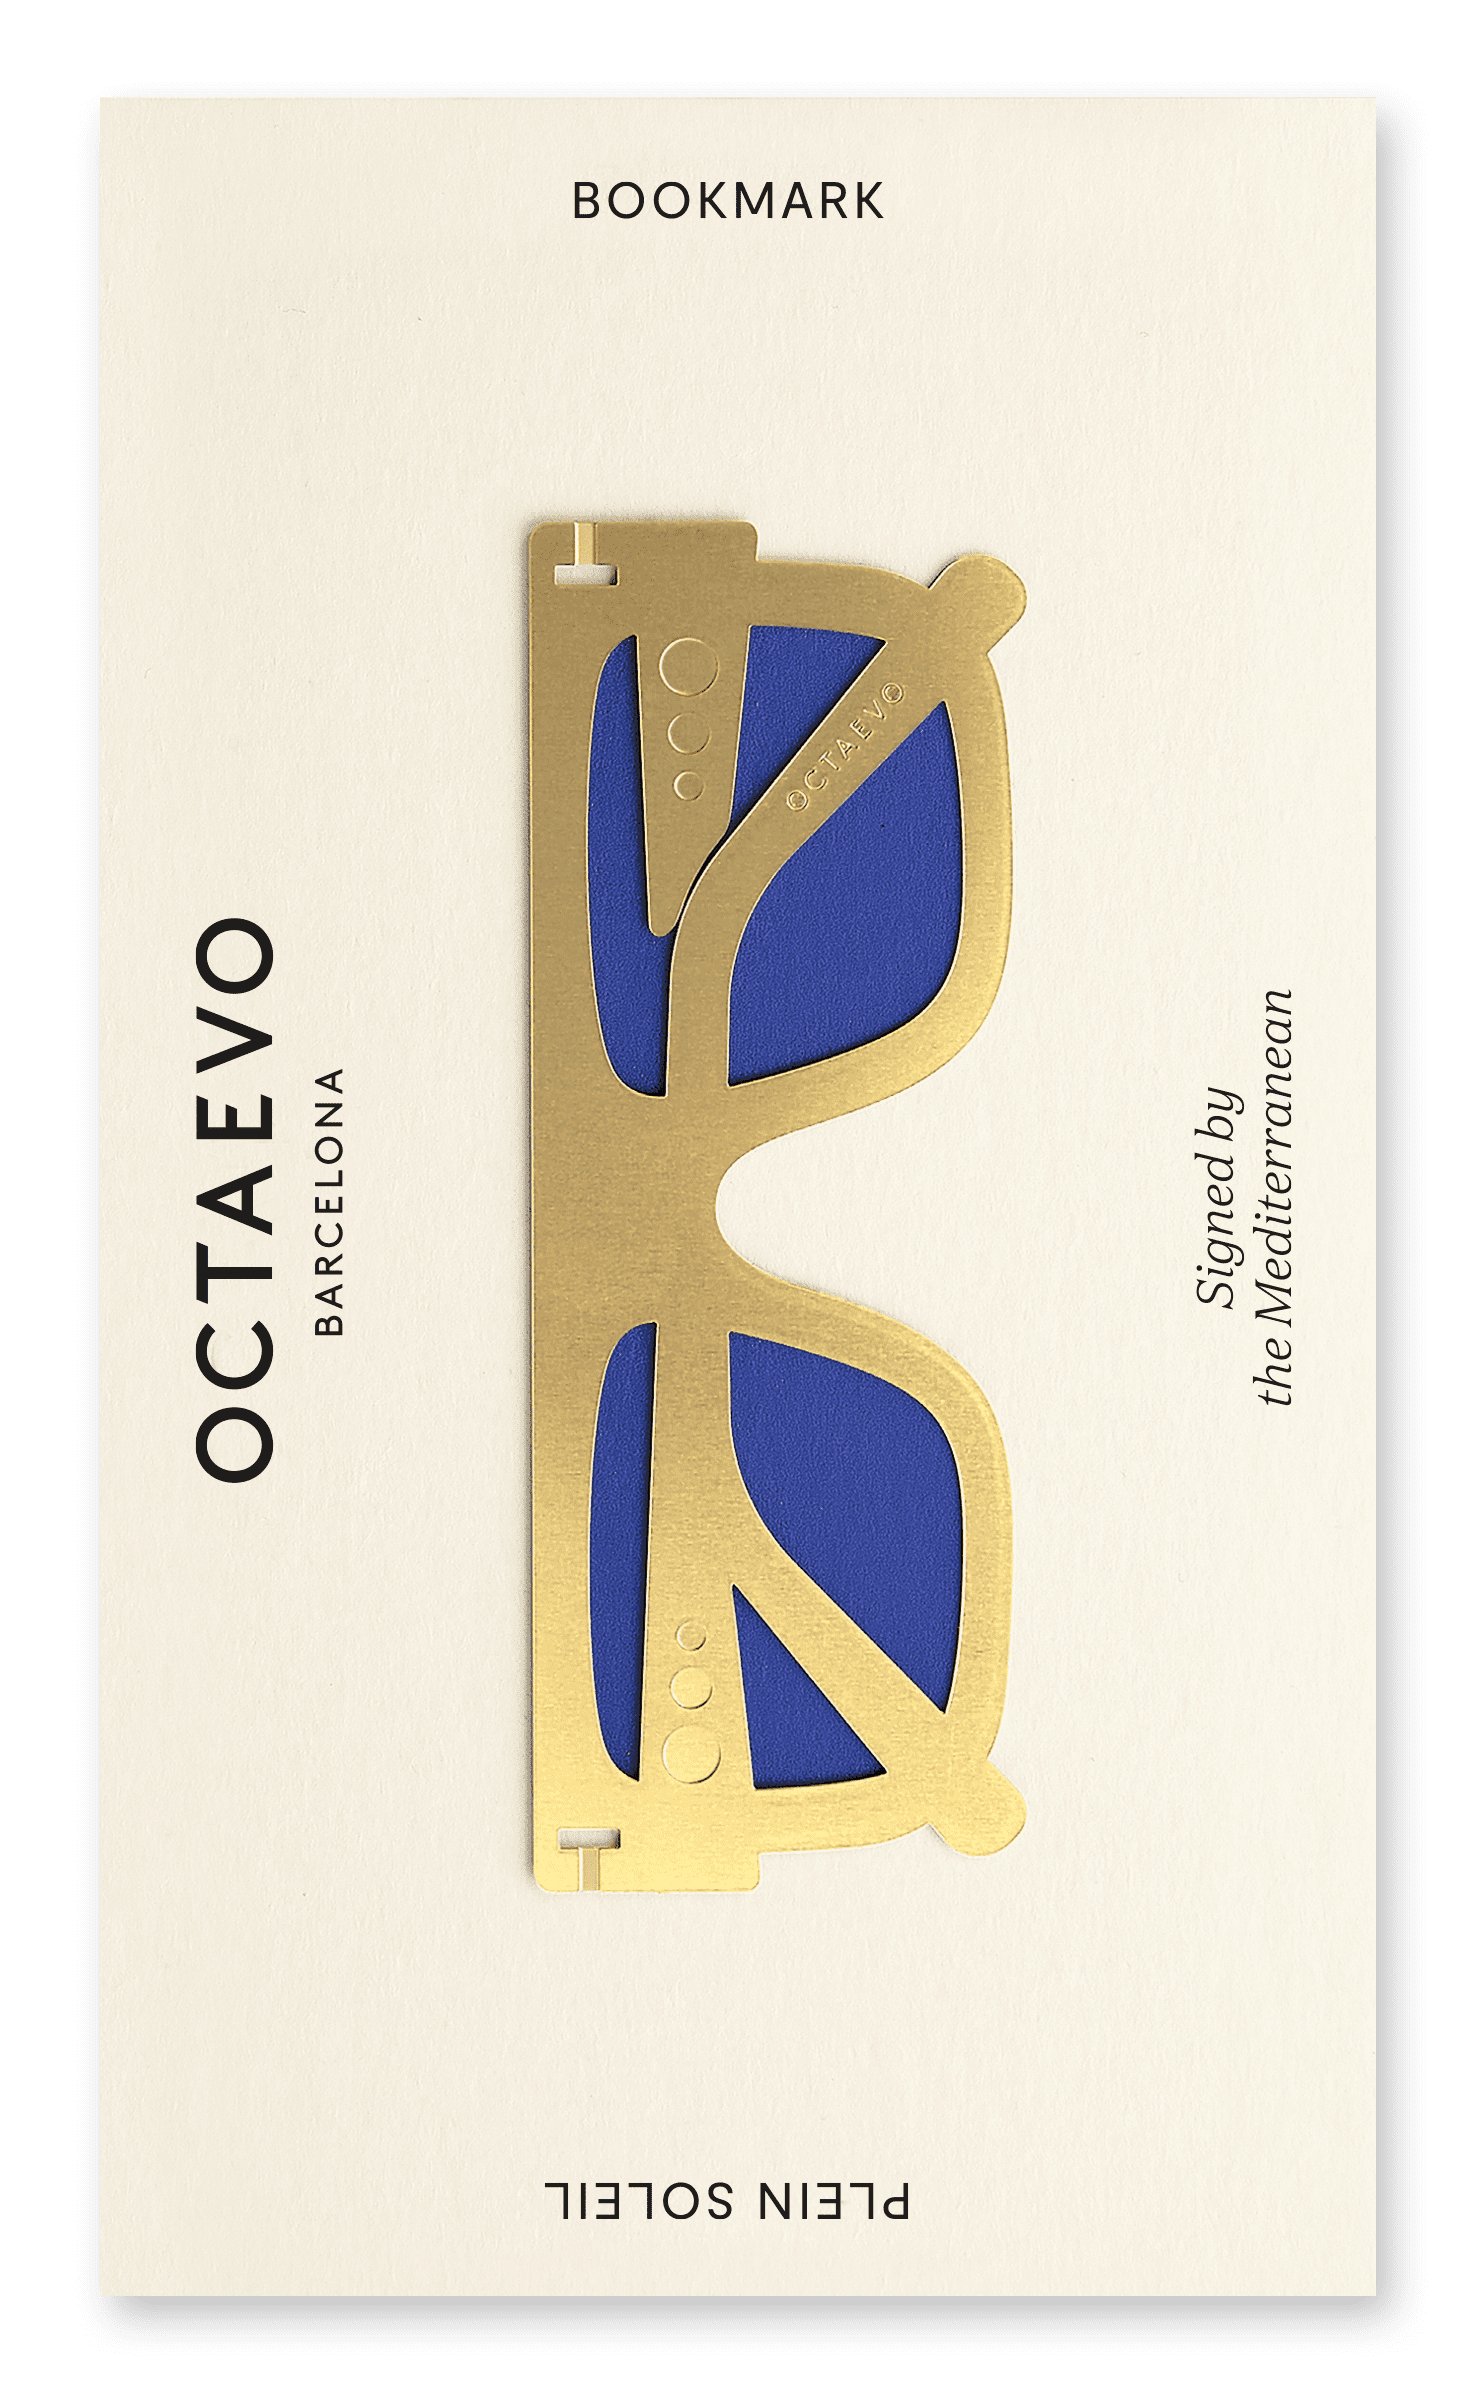 Bookmark Plein Soleil by OCTAEVO – Octaevo